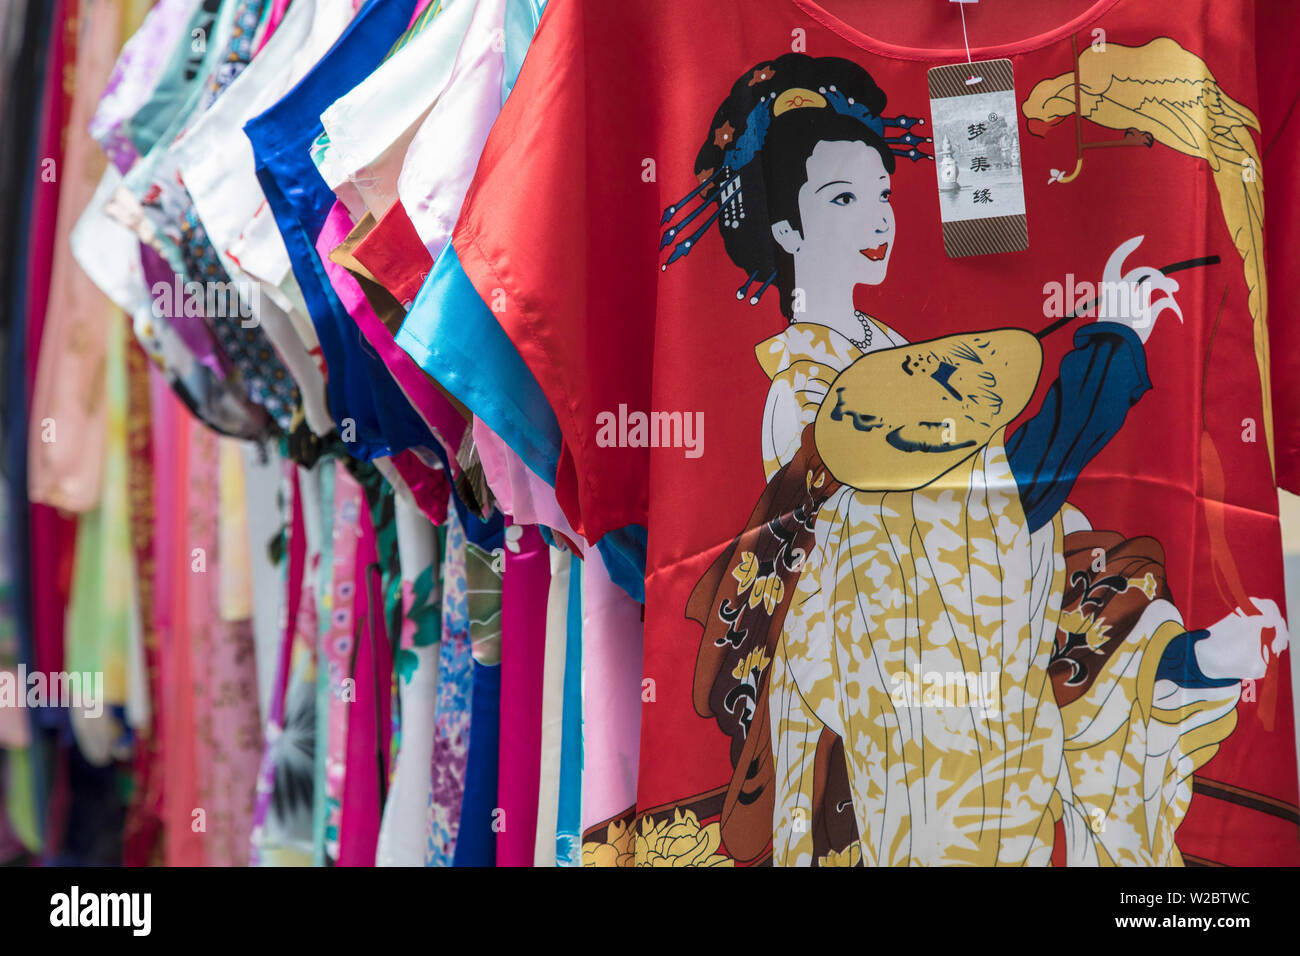 Vêtements de soie colorés pour la vente, marché de la vieille ville, Shanghai, Chine Banque D'Images